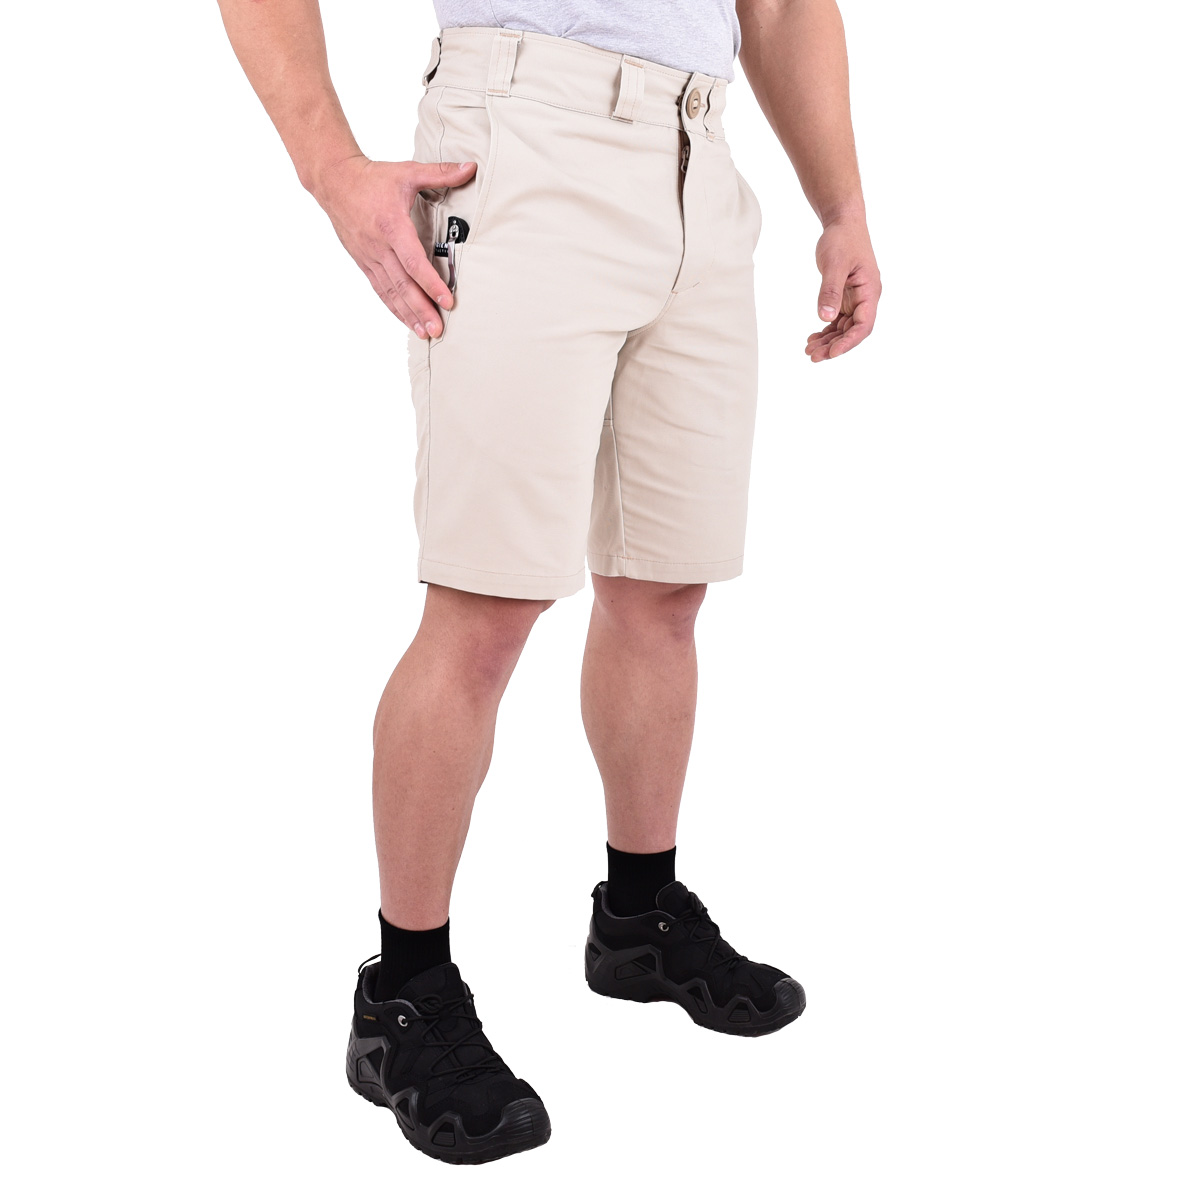 Войти главная навигатор shorts. Многоцелевые брюки Navigator — Тан-канвас.